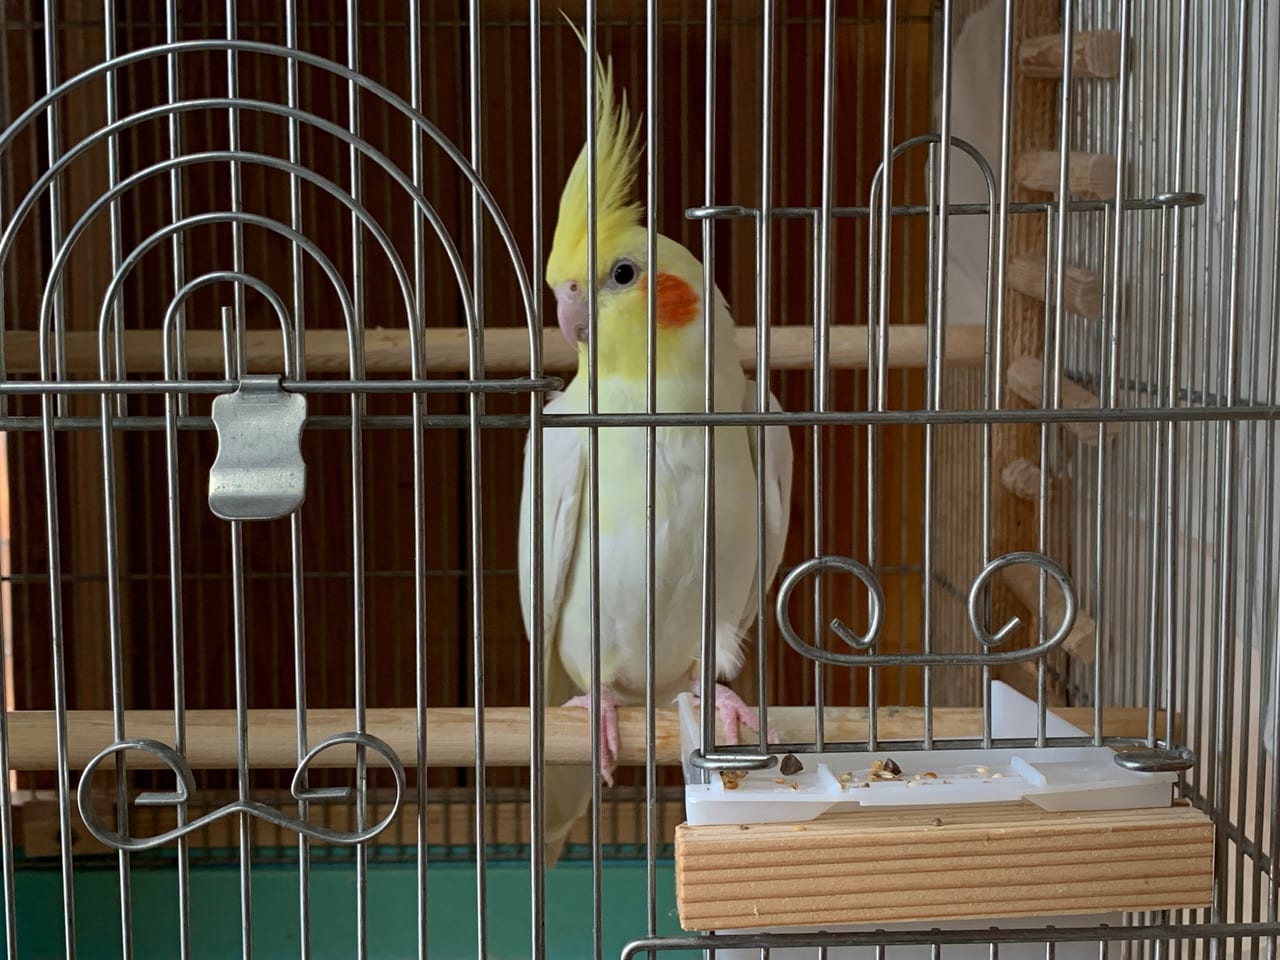 静岡市駿河区 文鳥 インコ 小鳥を飼いたい と思ったあなたに 静岡市駿河区で唯一の 小鳥専門店があるらしい 号外net 静岡市駿河区